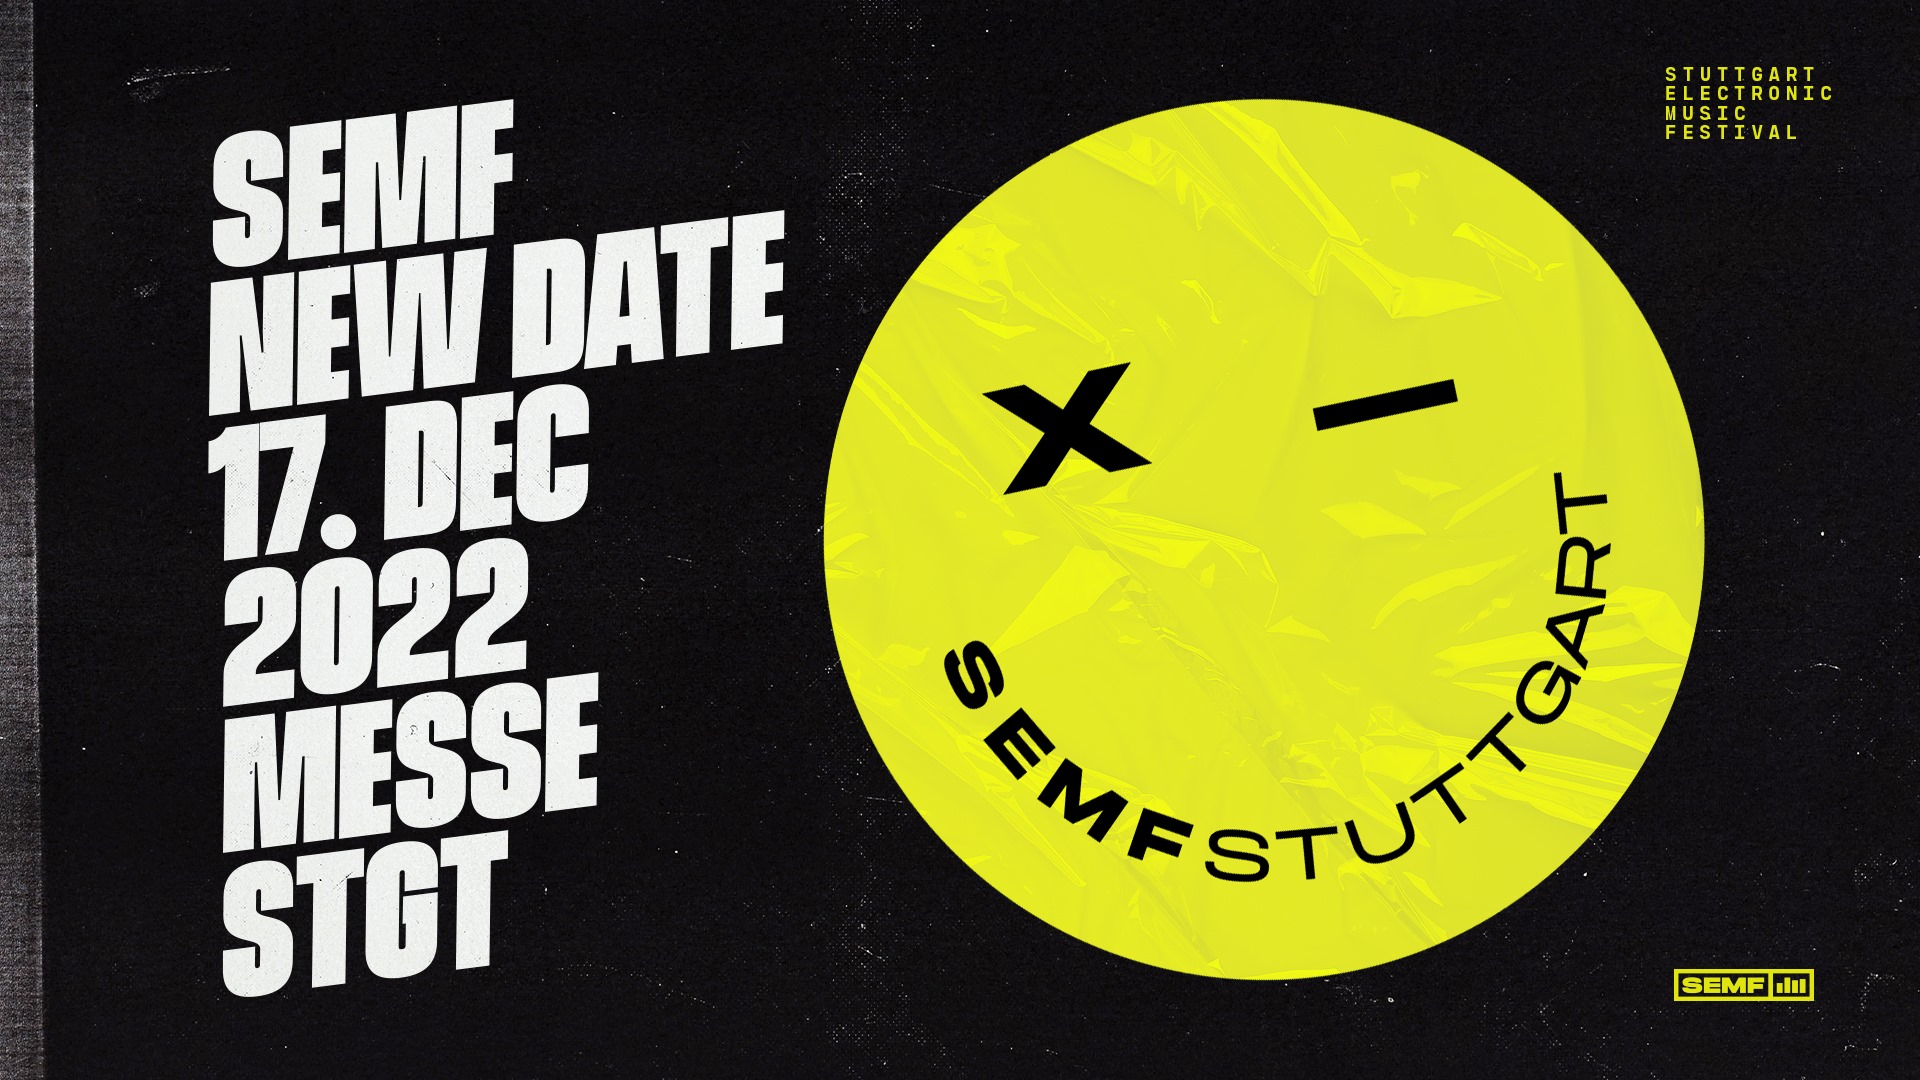 Stuttgart Electronic Music Festival 2023